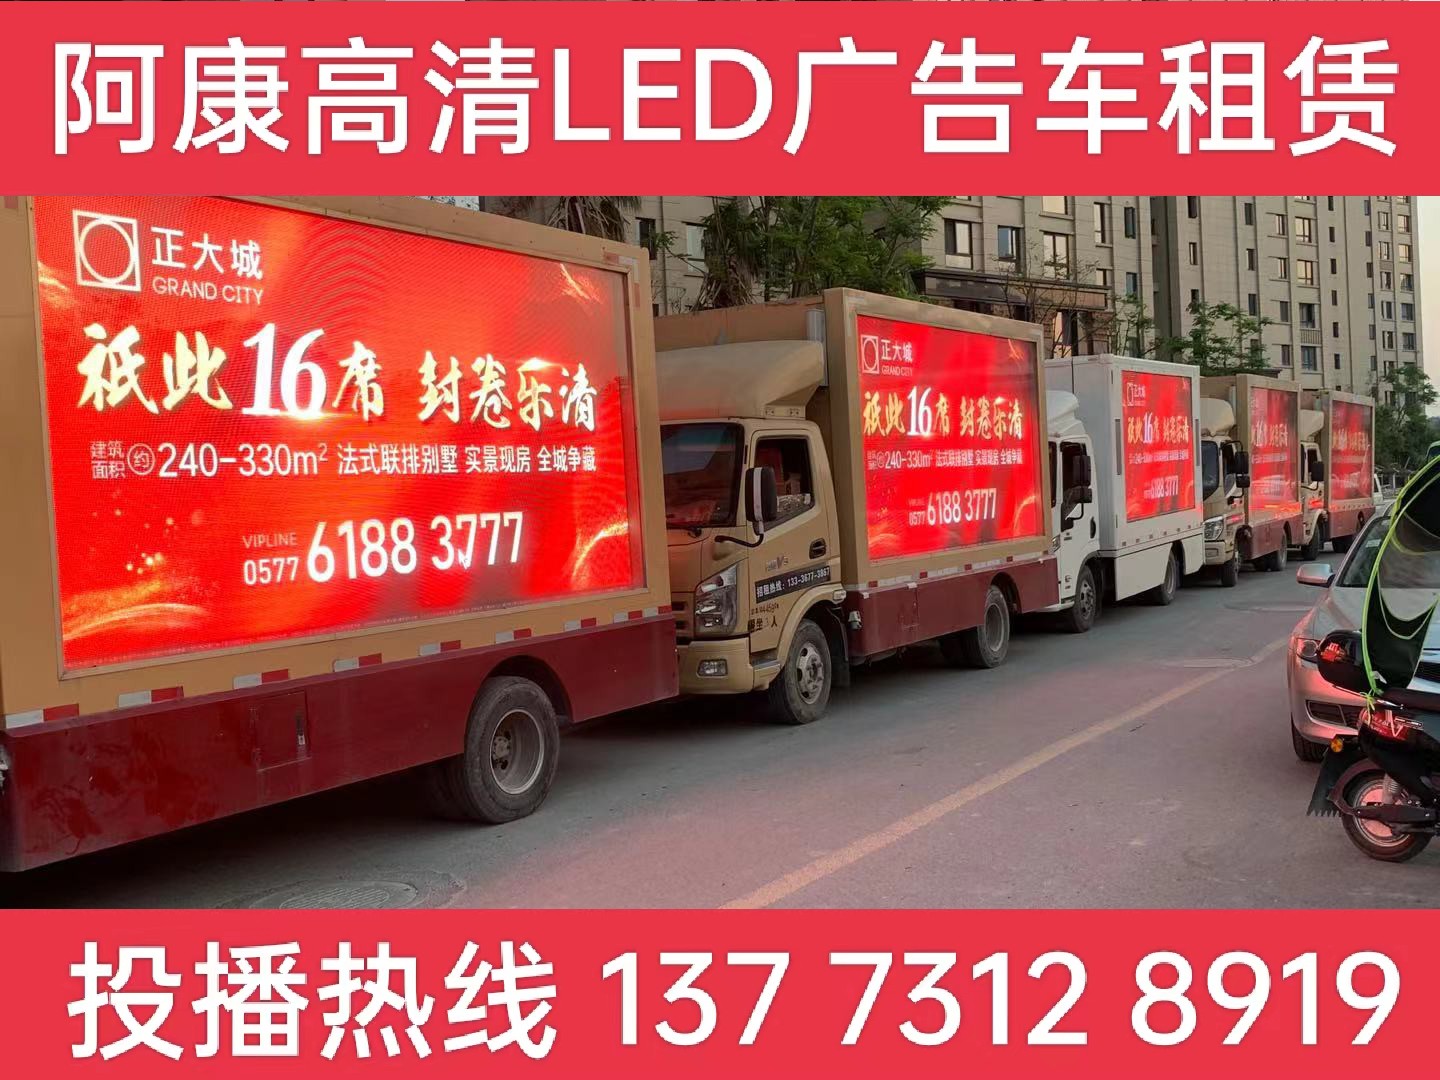 宝应LED广告车出租